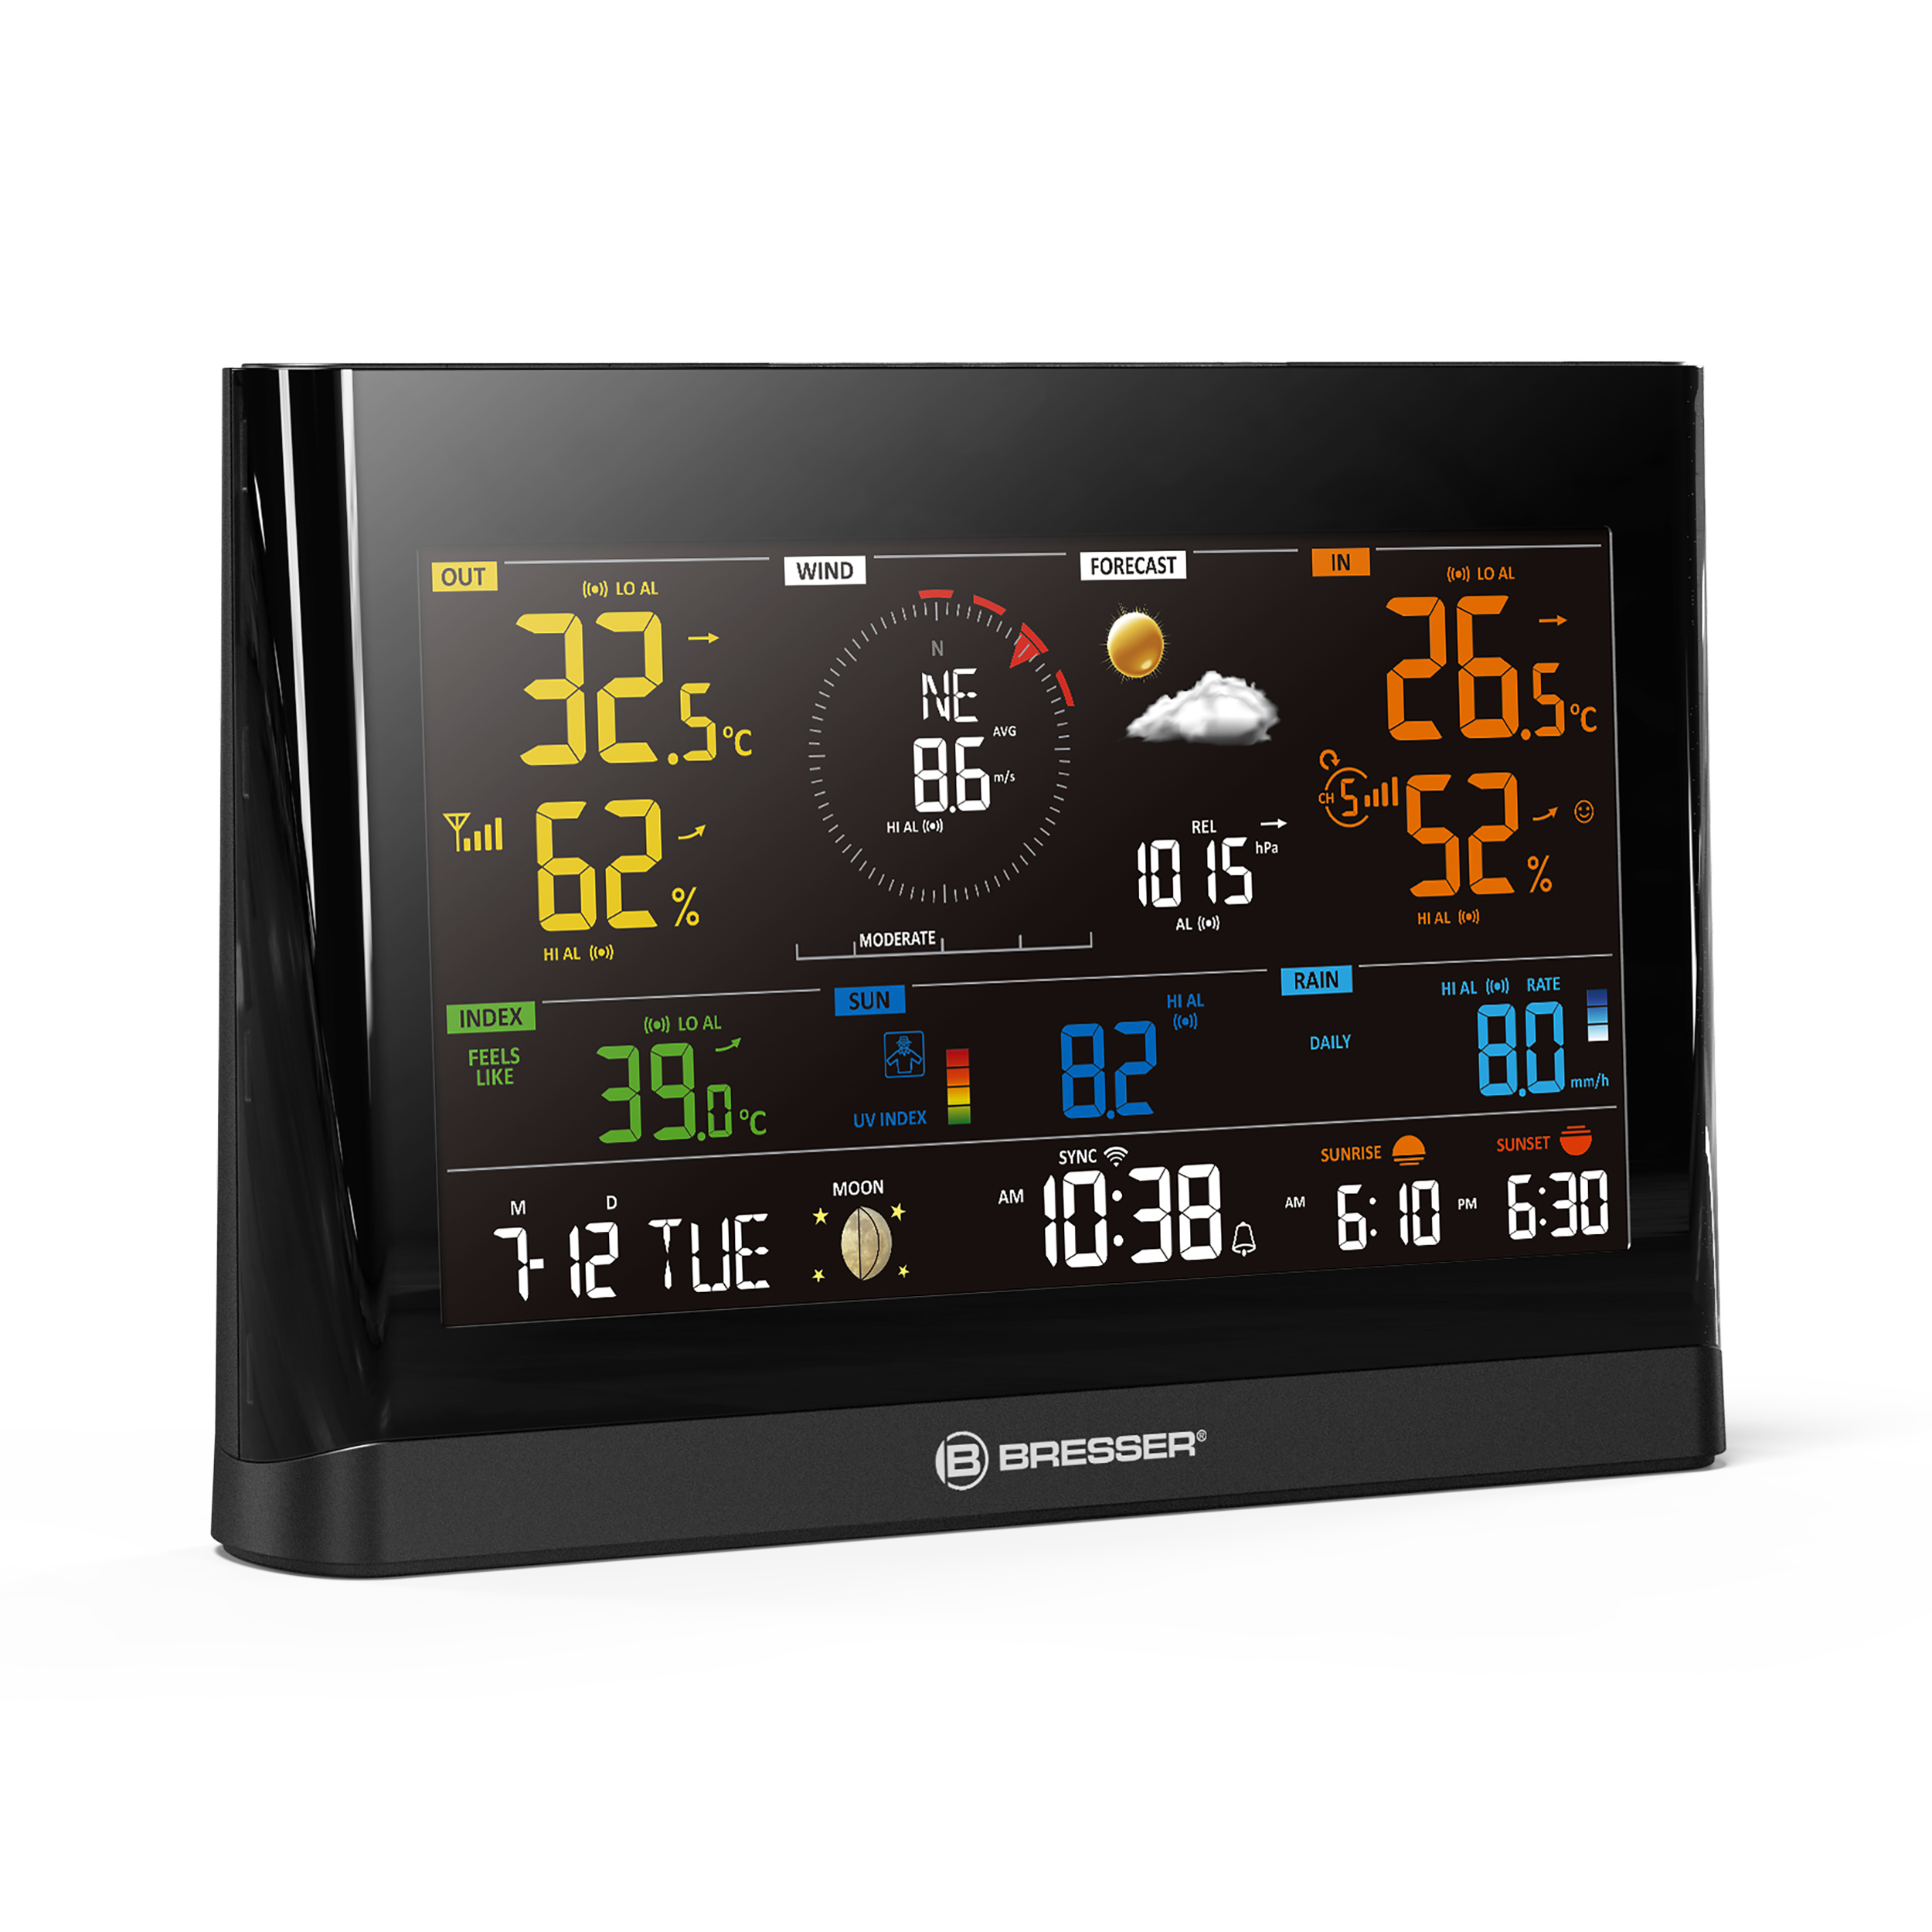 BRESSER WLAN Comfort Wetterstation mit 7-in-1 Profi-Sensor und modernem Farbdisplay